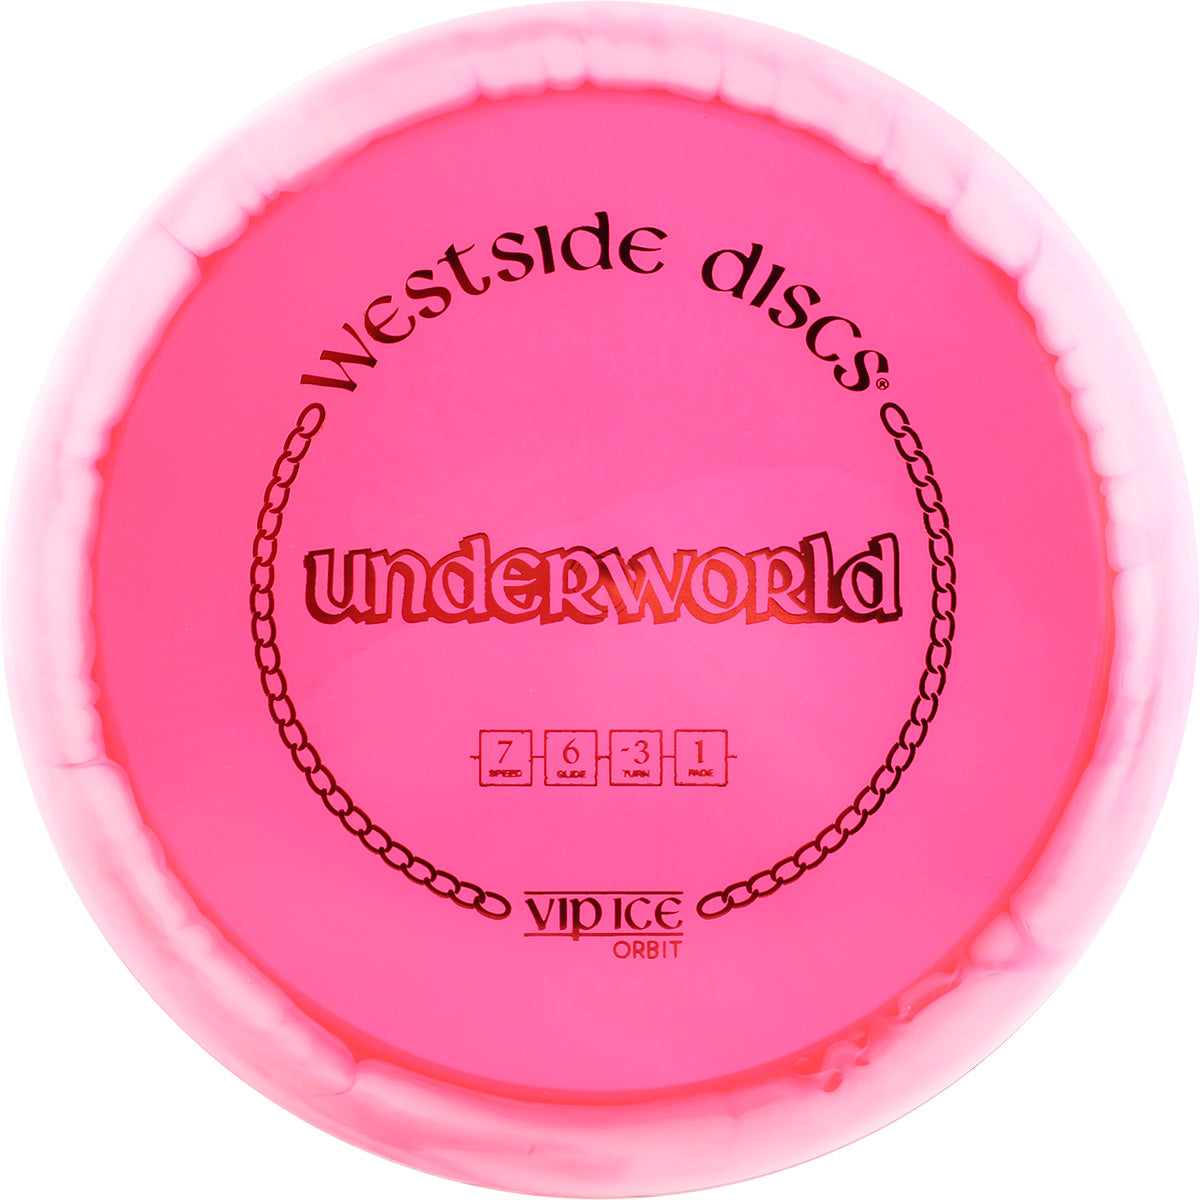 VIP-Ice Orbit Underworld